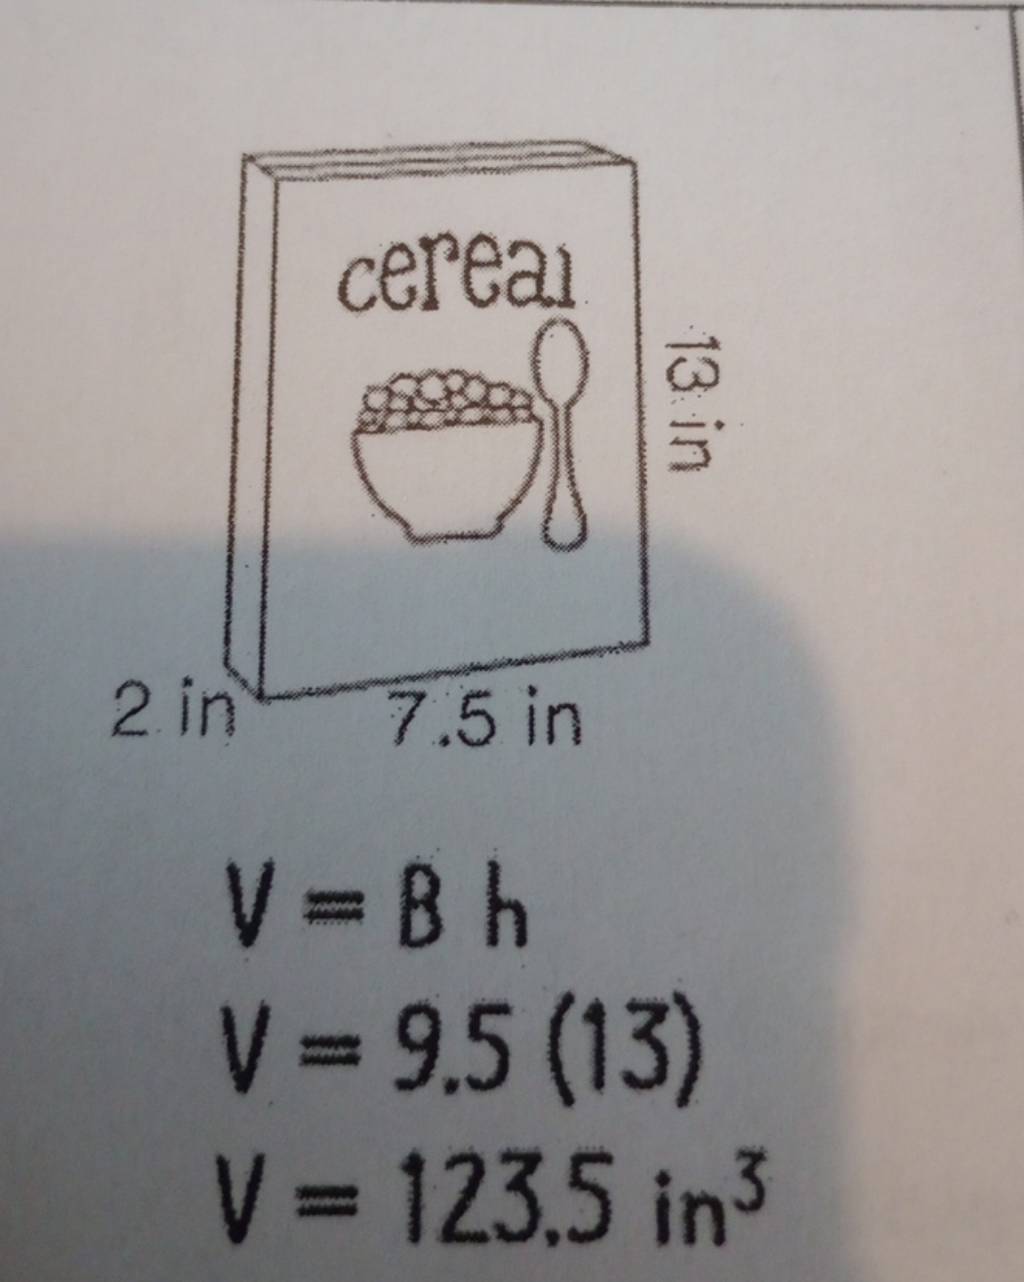 2. in
cereal
C
13 in
7.5 in
V=Bh
V = 9.5 (13)
V = 123.5 in³